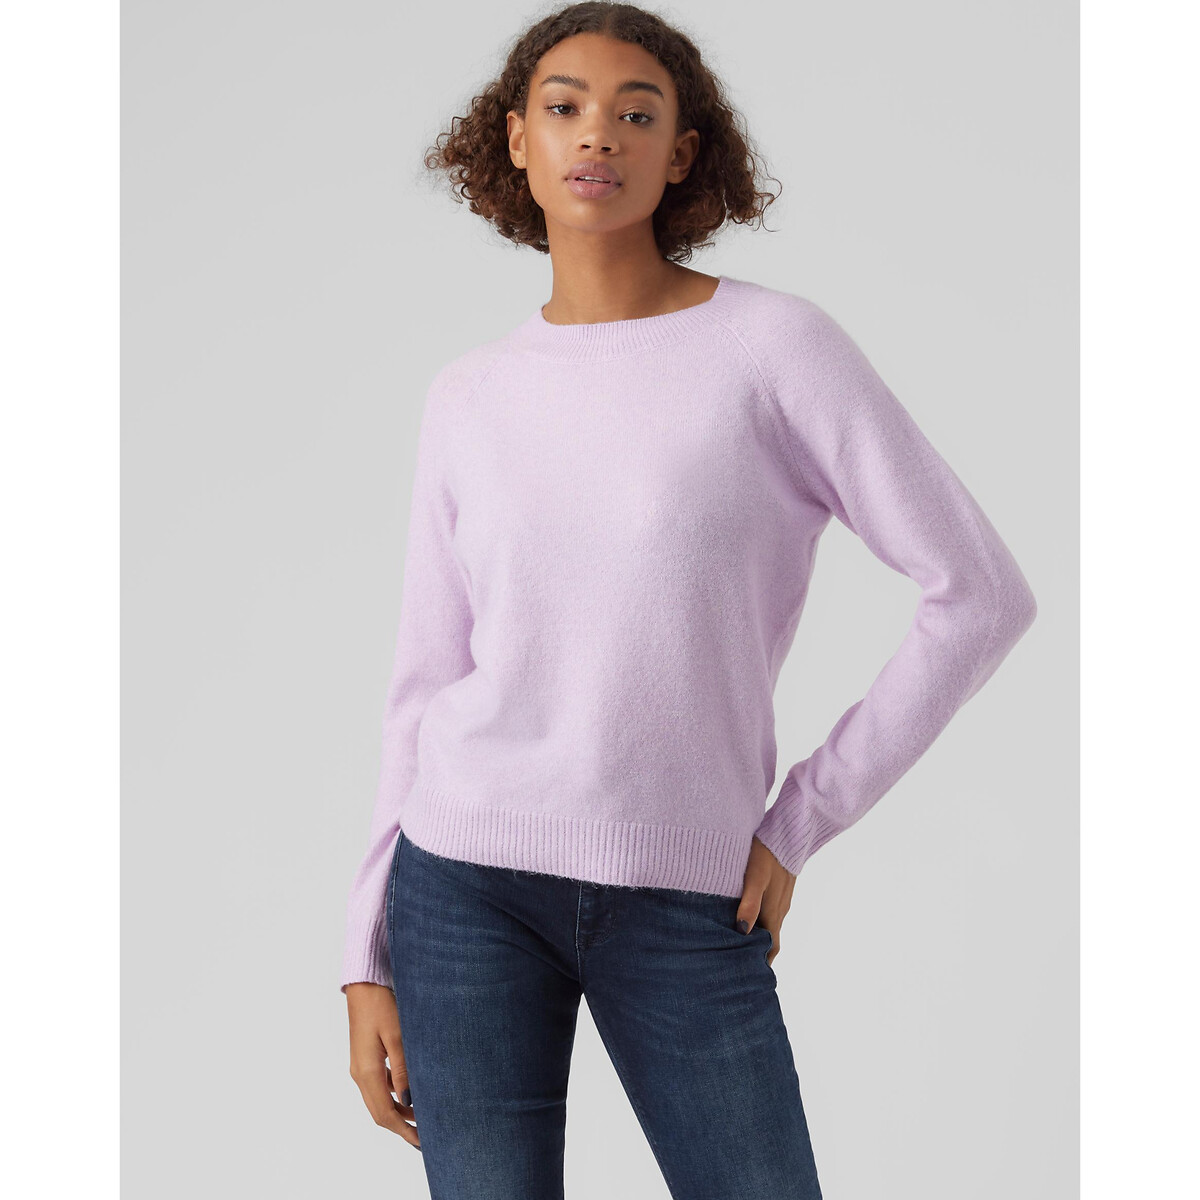 Пуловер Из пышного трикотажа M розовый LaRedoute, размер M - фото 1